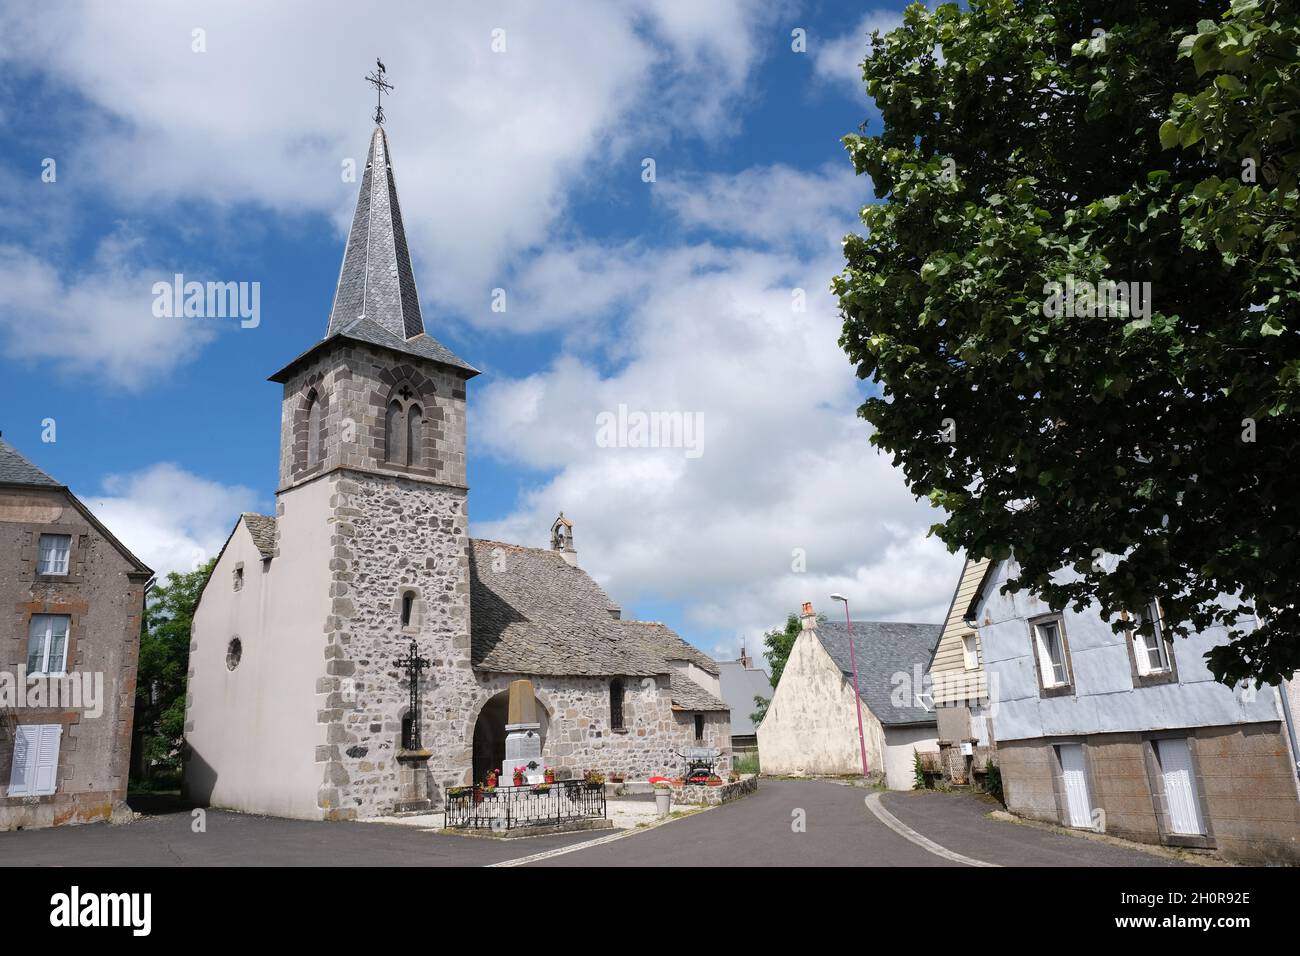 Le village de Montgreleix sur le plateau de Cezallier (centre sud de la France).Vue d'ensemble de l'église Saint-Laurent (St.Église de LawrenceÕs) Banque D'Images